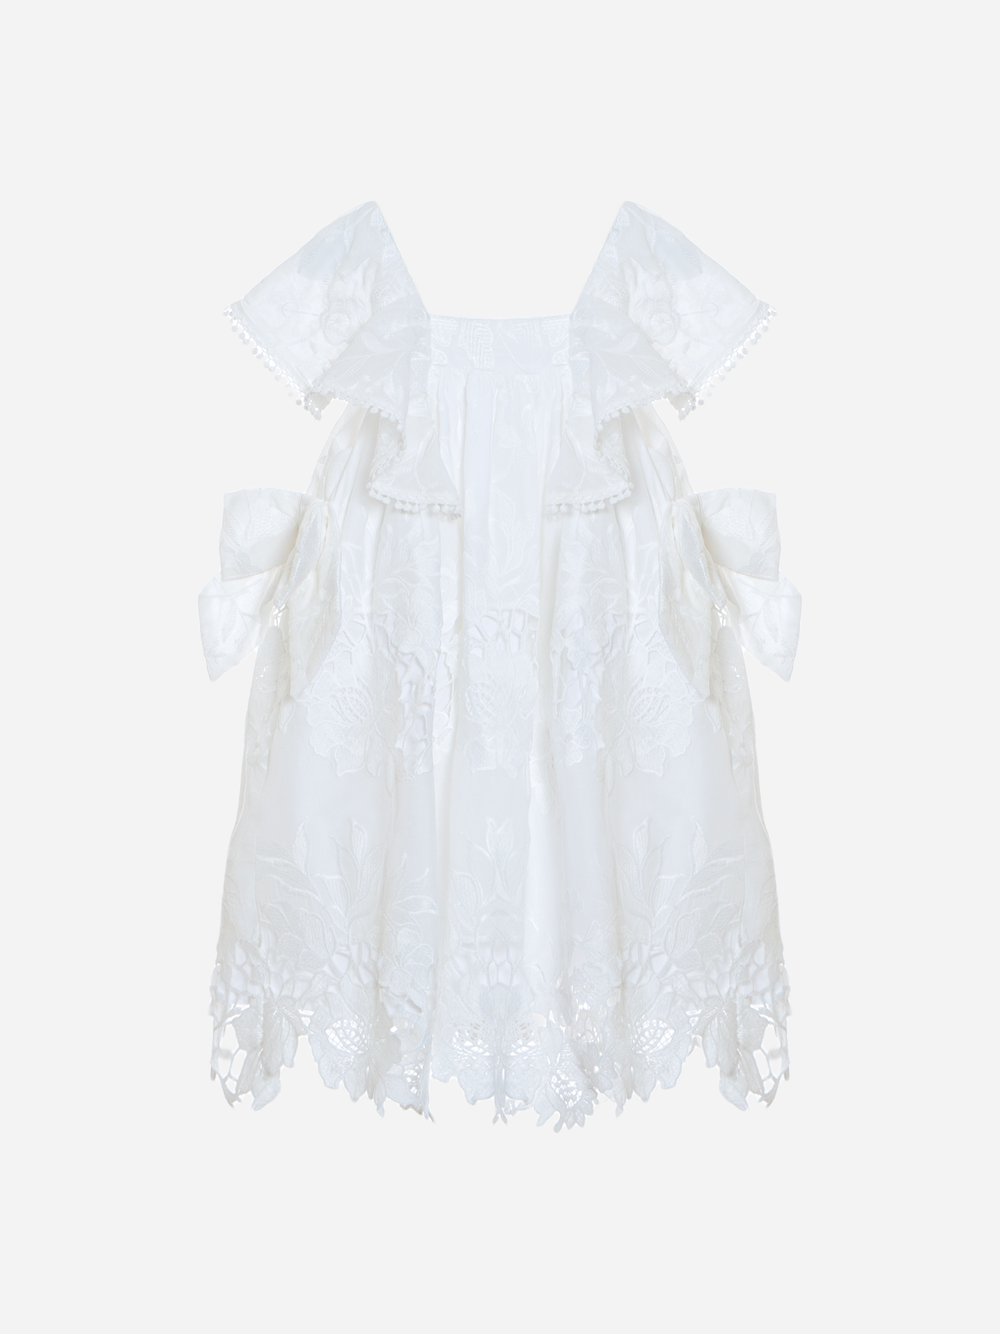 Girls white lace dress